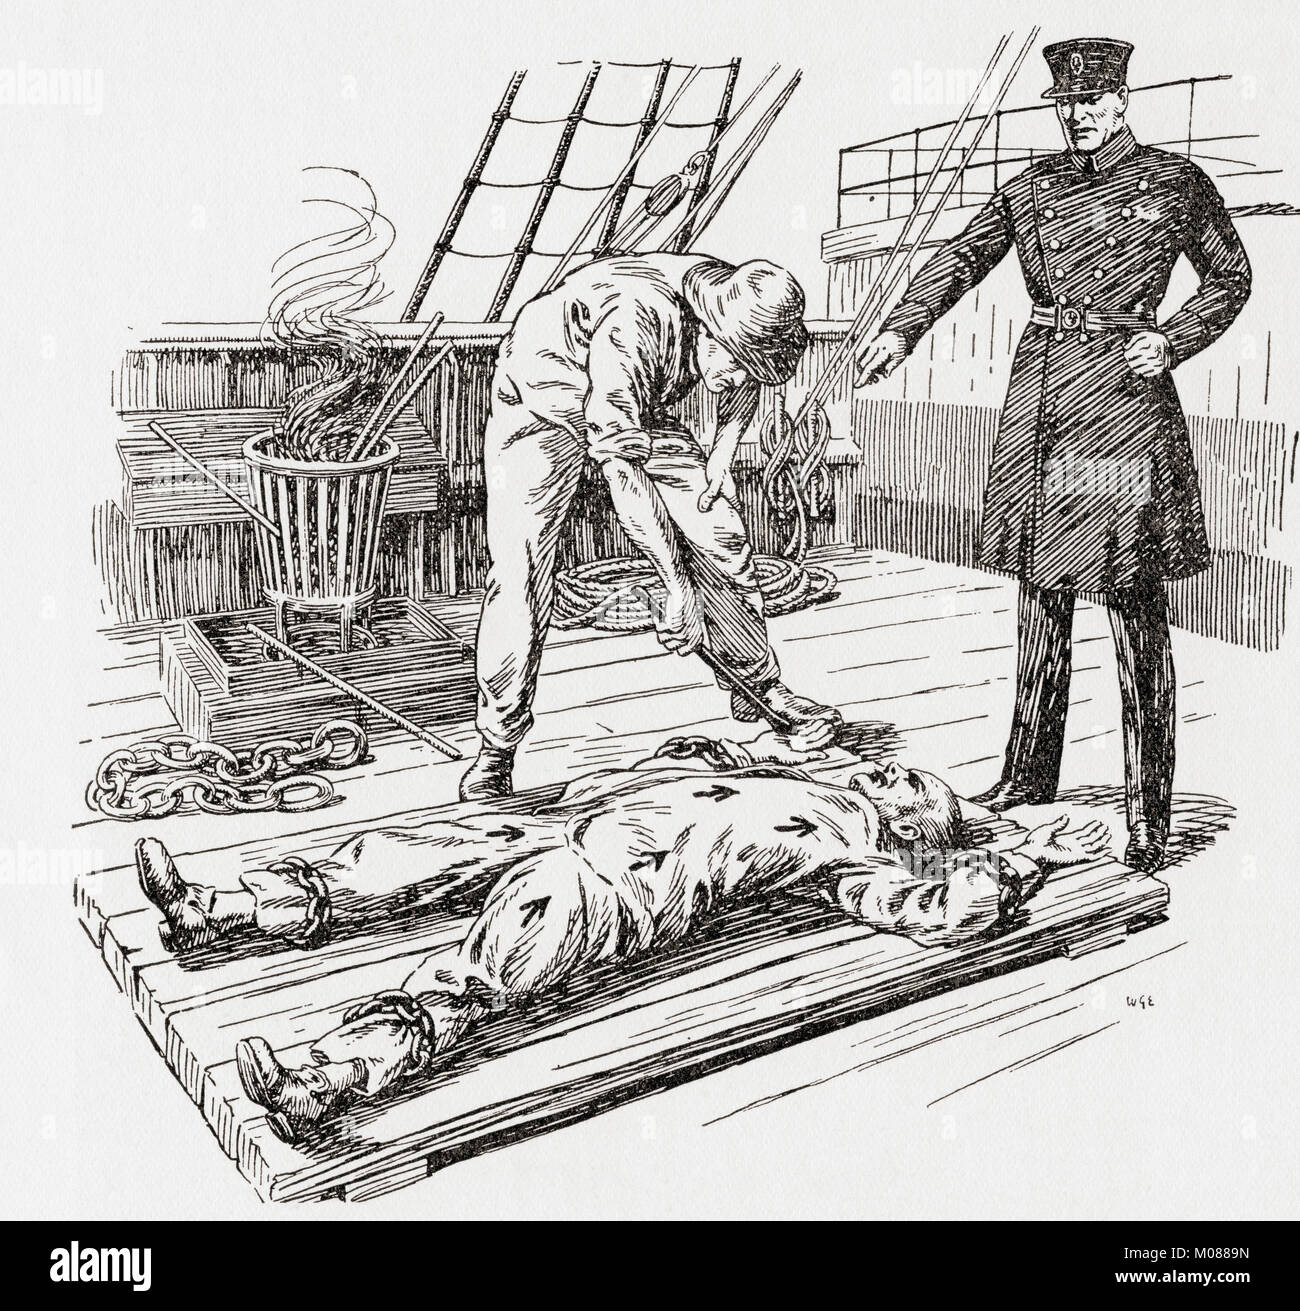 Das Branding eines Gefangenen mit einem heißen Eisen an Bord ein Gefängnis hulk im frühen 19. Jahrhundert. Die Märtyrer von Tolpuddle, veröffentlicht 1934. Stockfoto